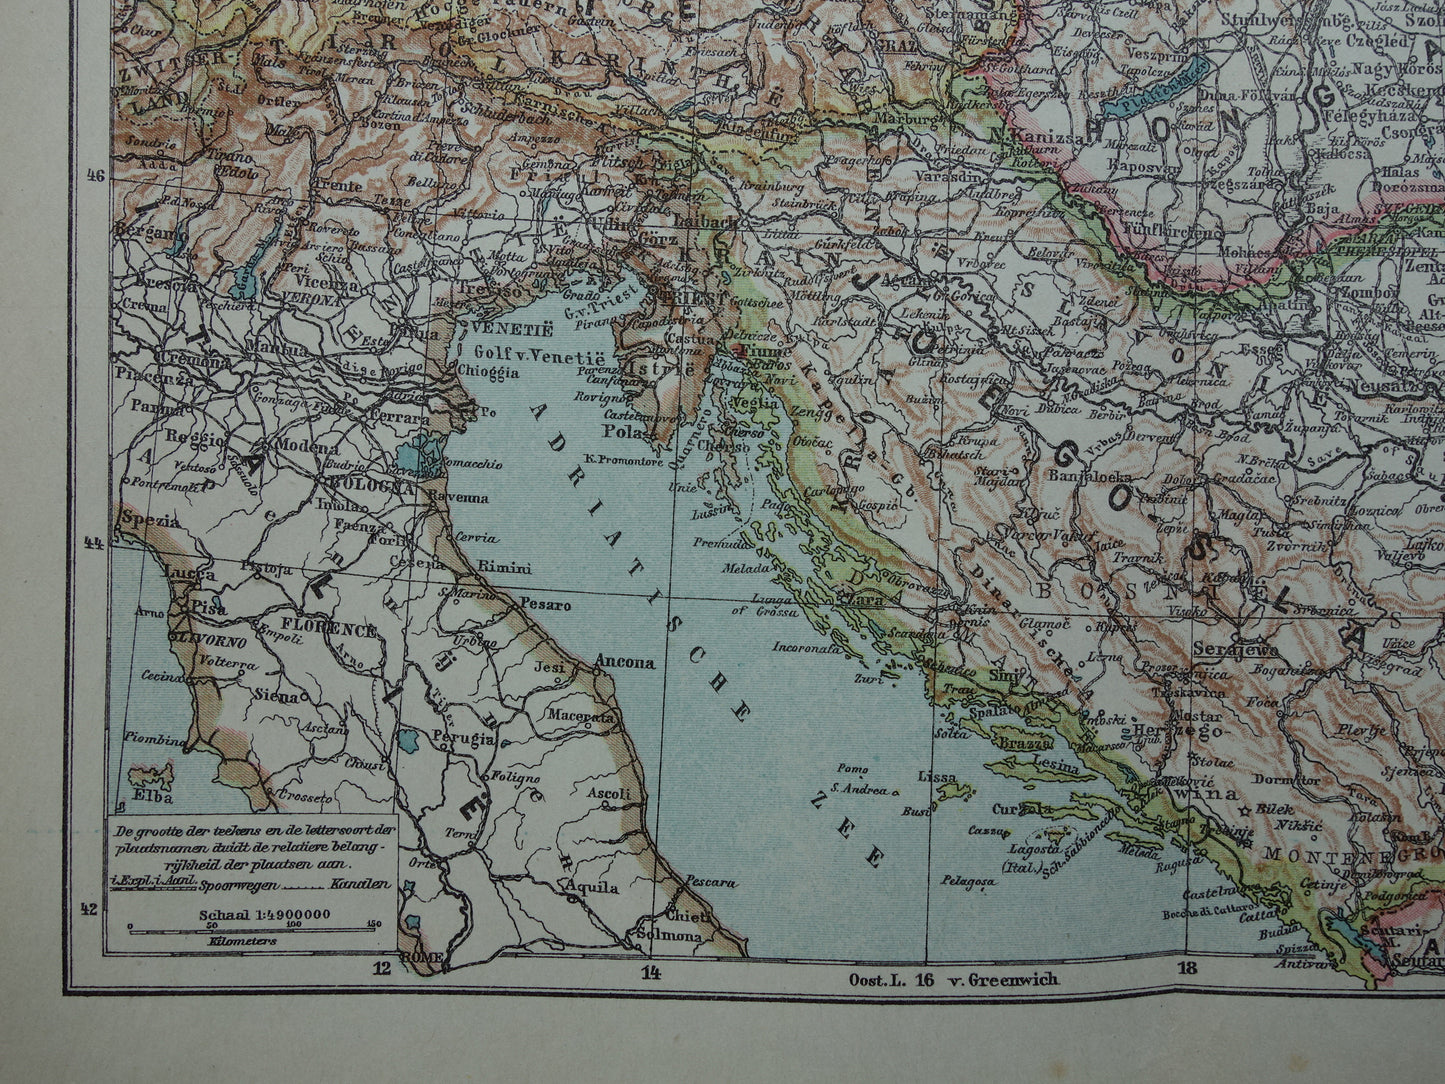 Oude kaart van de Balkan met Tsjechoslowakije Joegoslavië Hongarije Originele antieke Nederlandse landkaart van voormalig Oostenrijk-Hongarije uit 1921 vintage historische kaarten